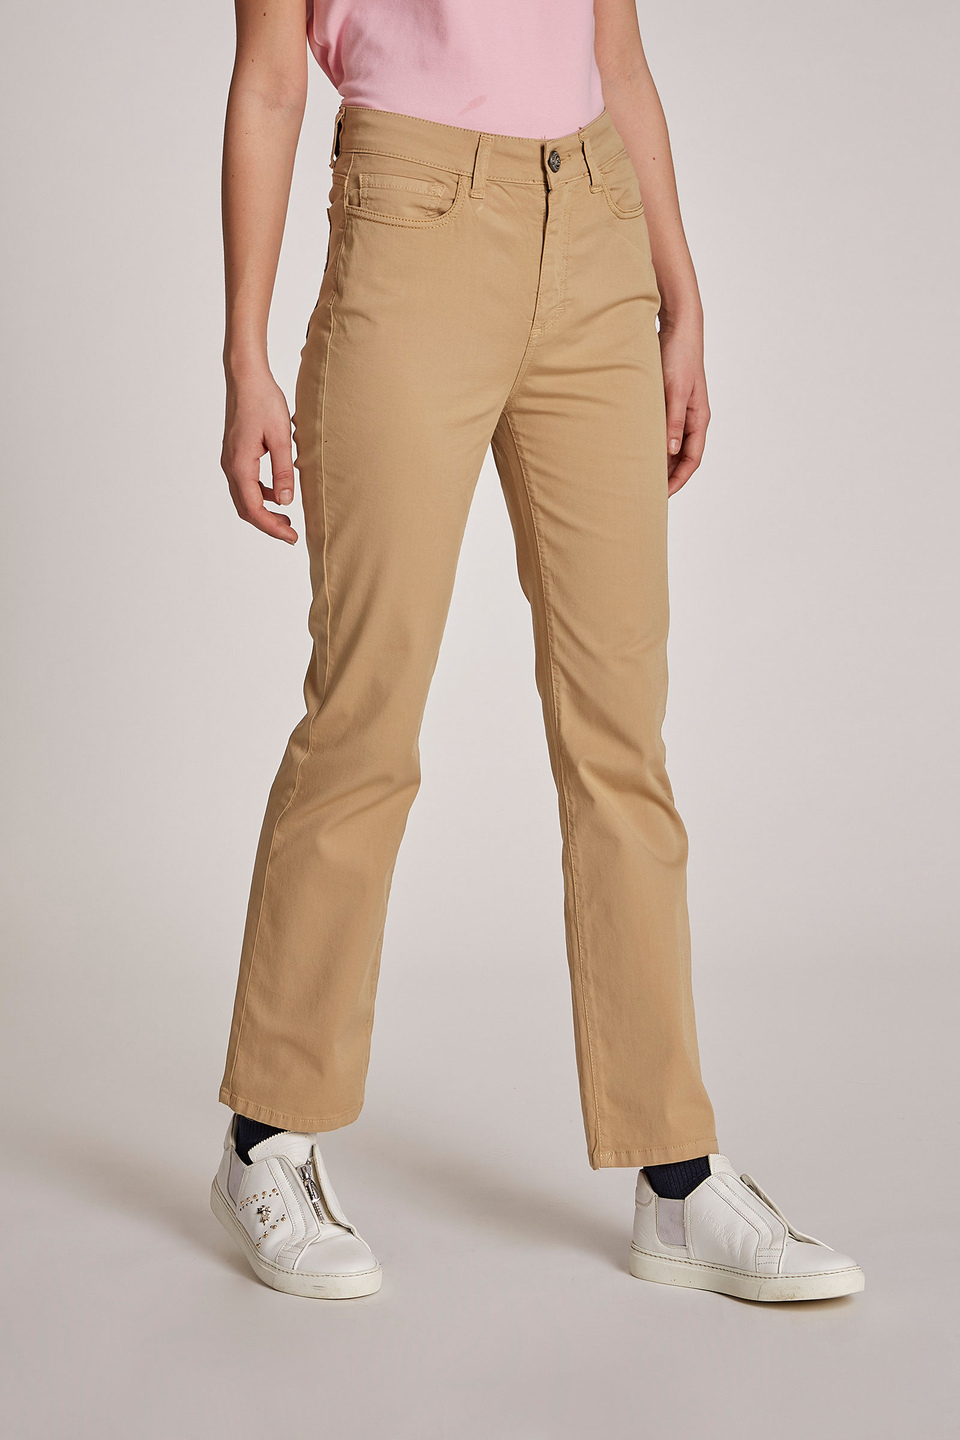 Pantalone da donna cinque tasche in cotone elasticizzato regular fit - La Martina - Official Online Shop